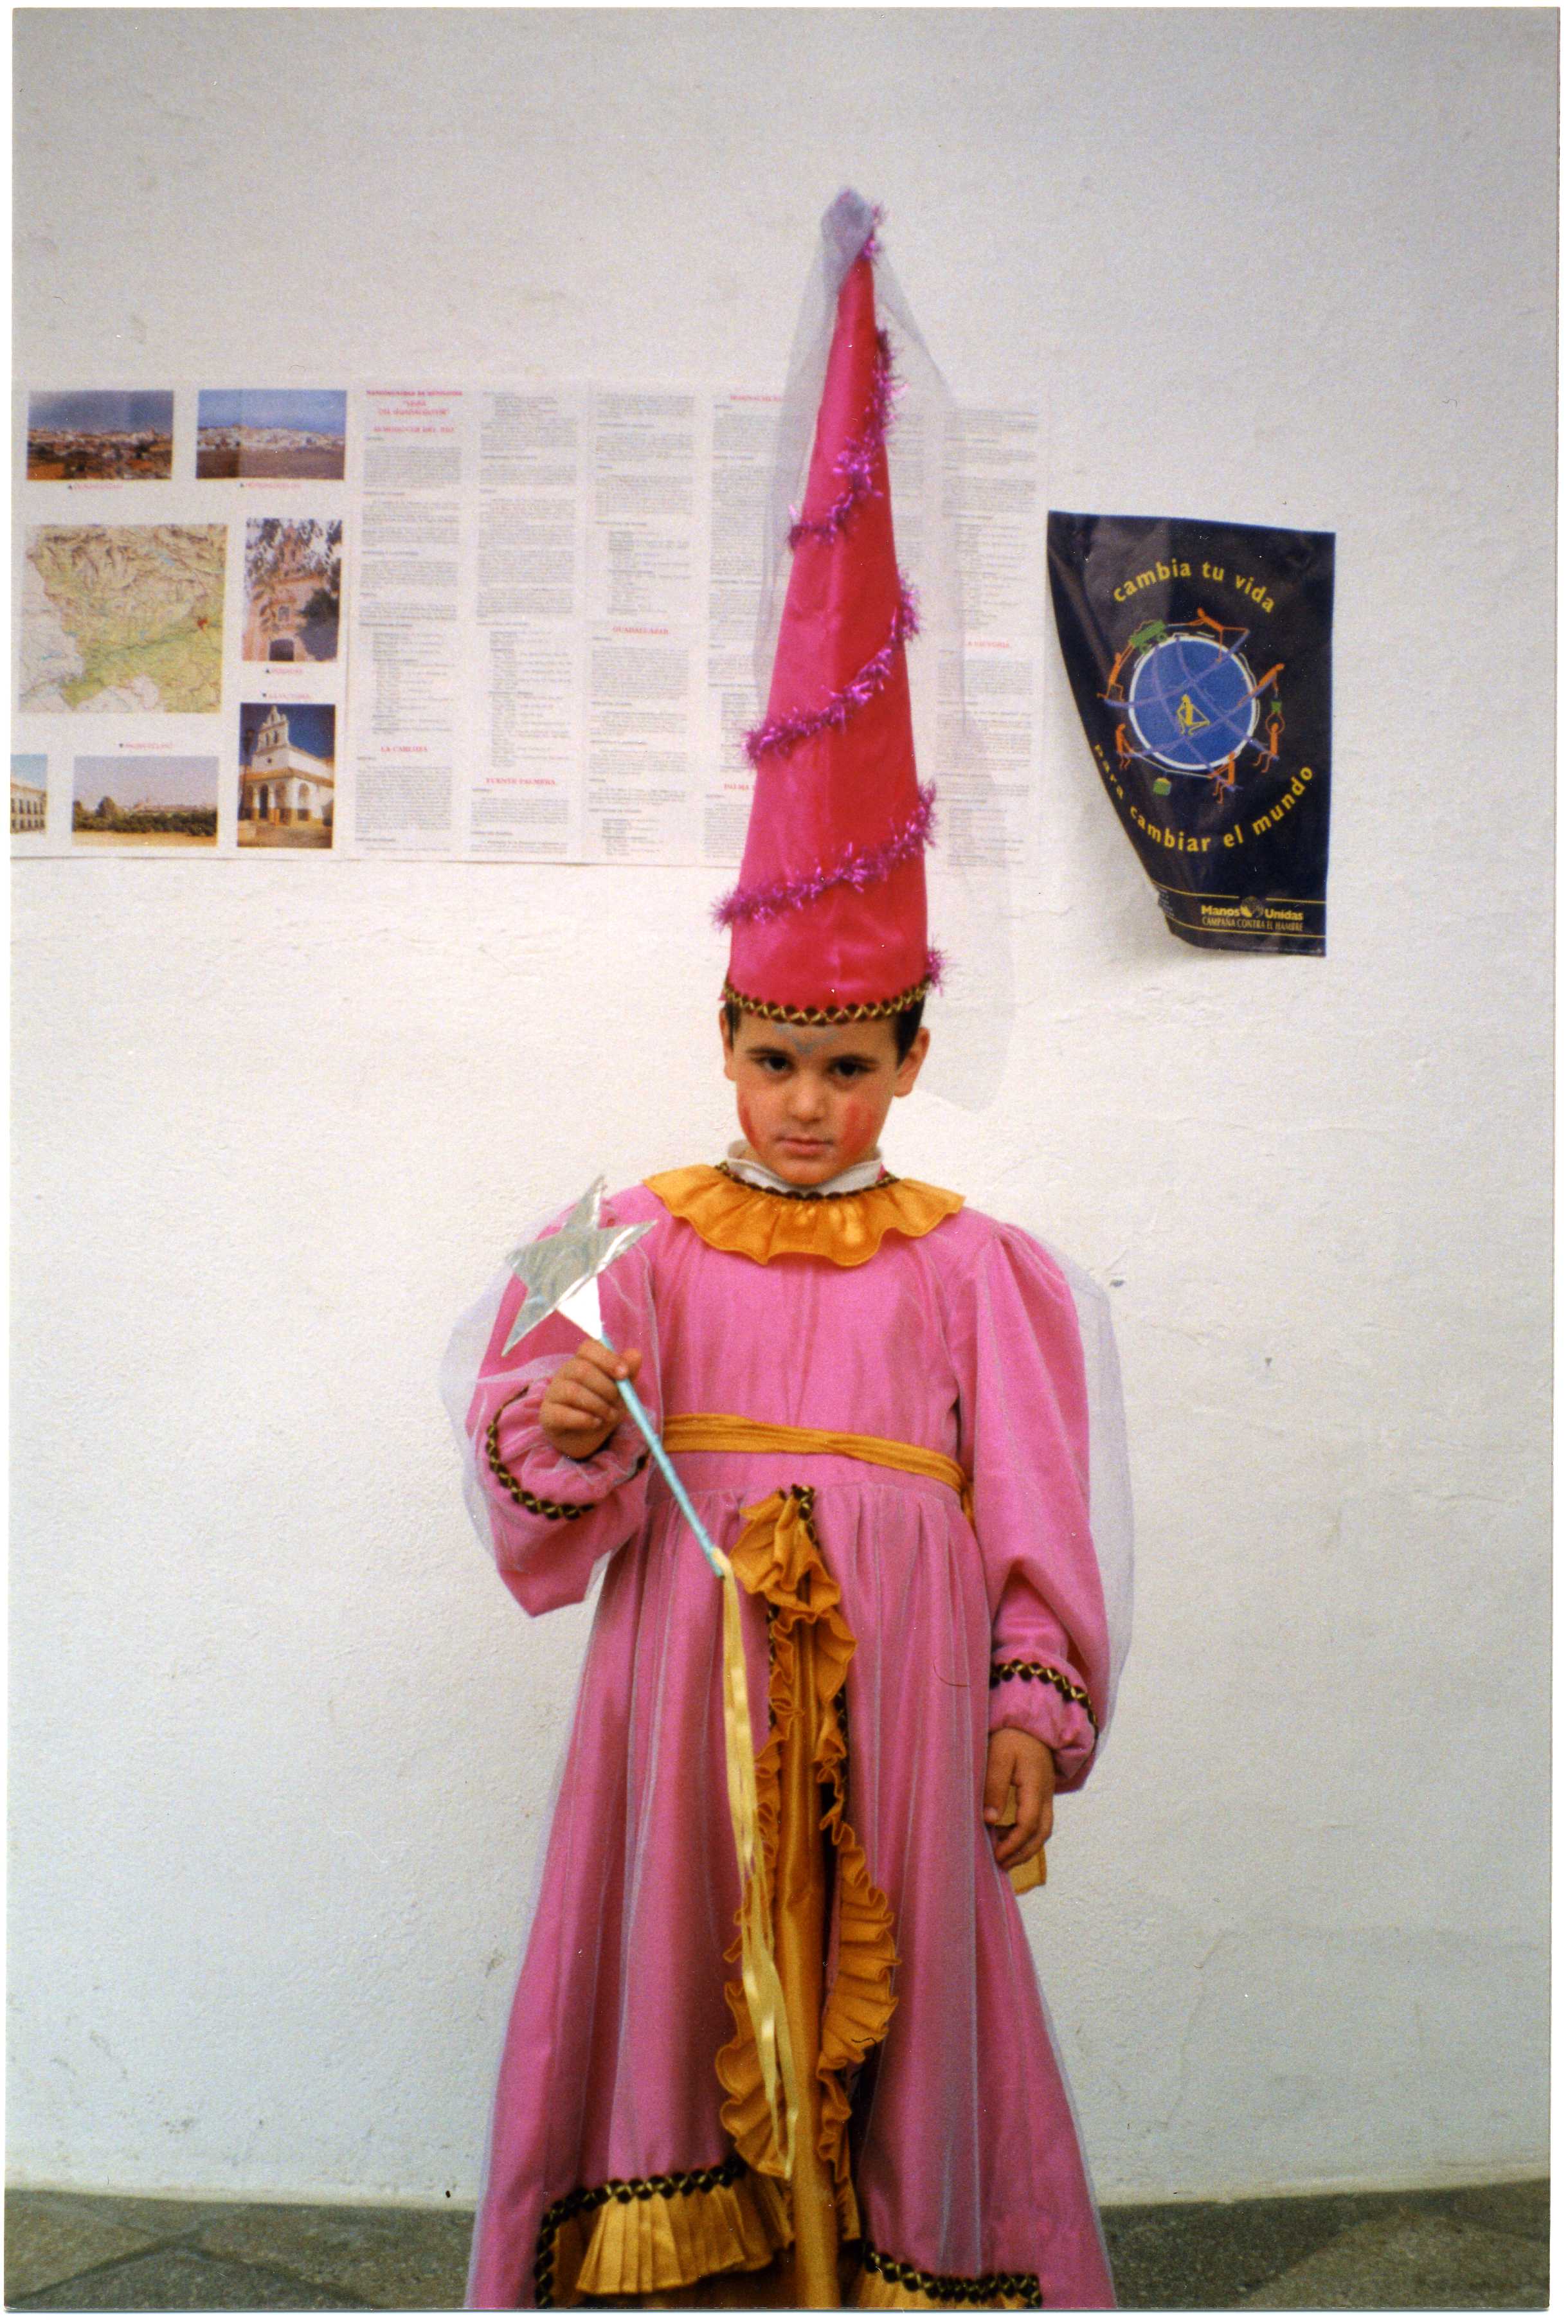 Palomo Spain, de pequeño, disfrazado